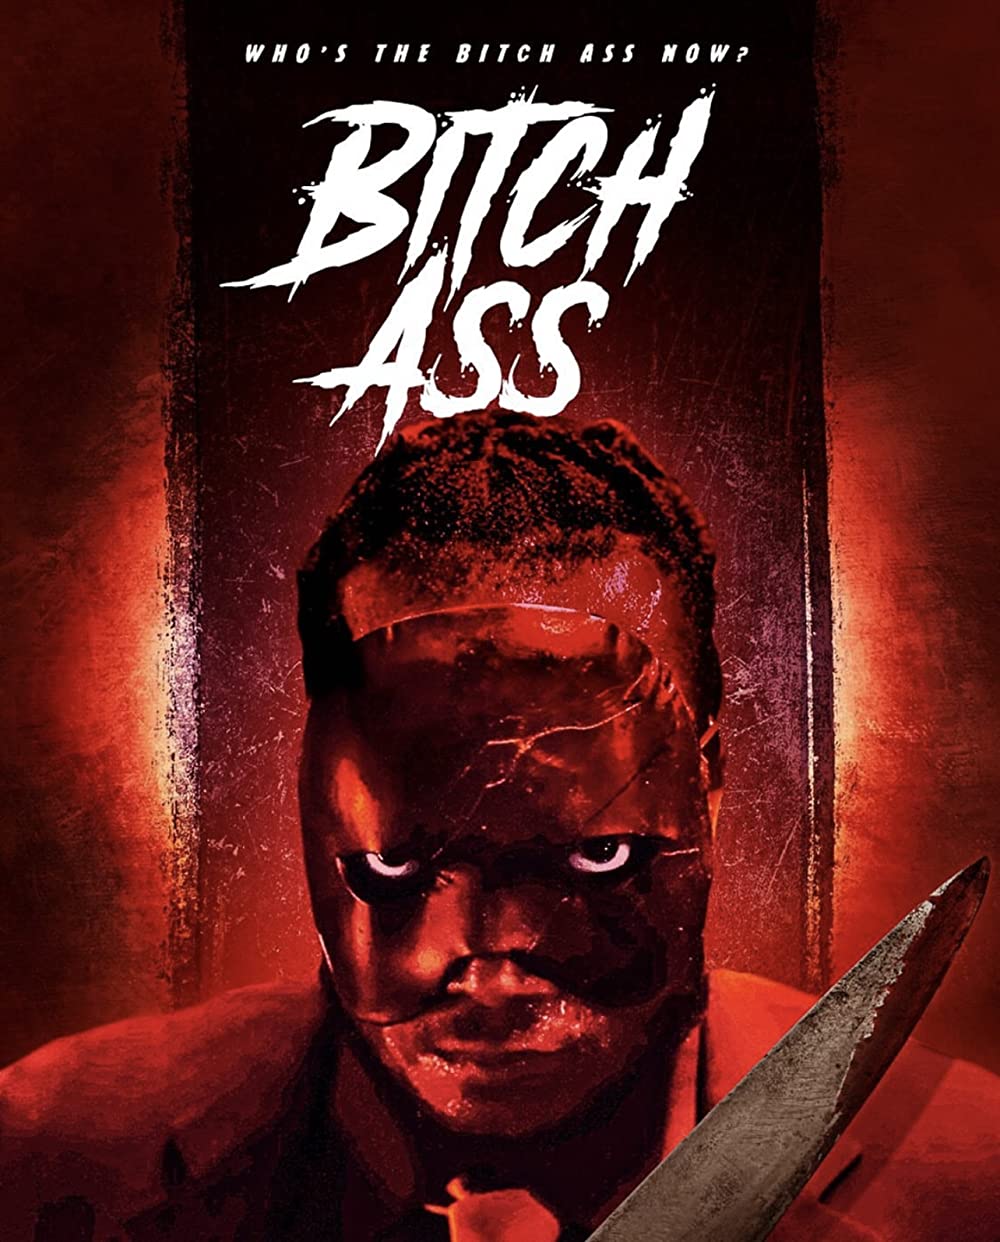 Bitch Ass